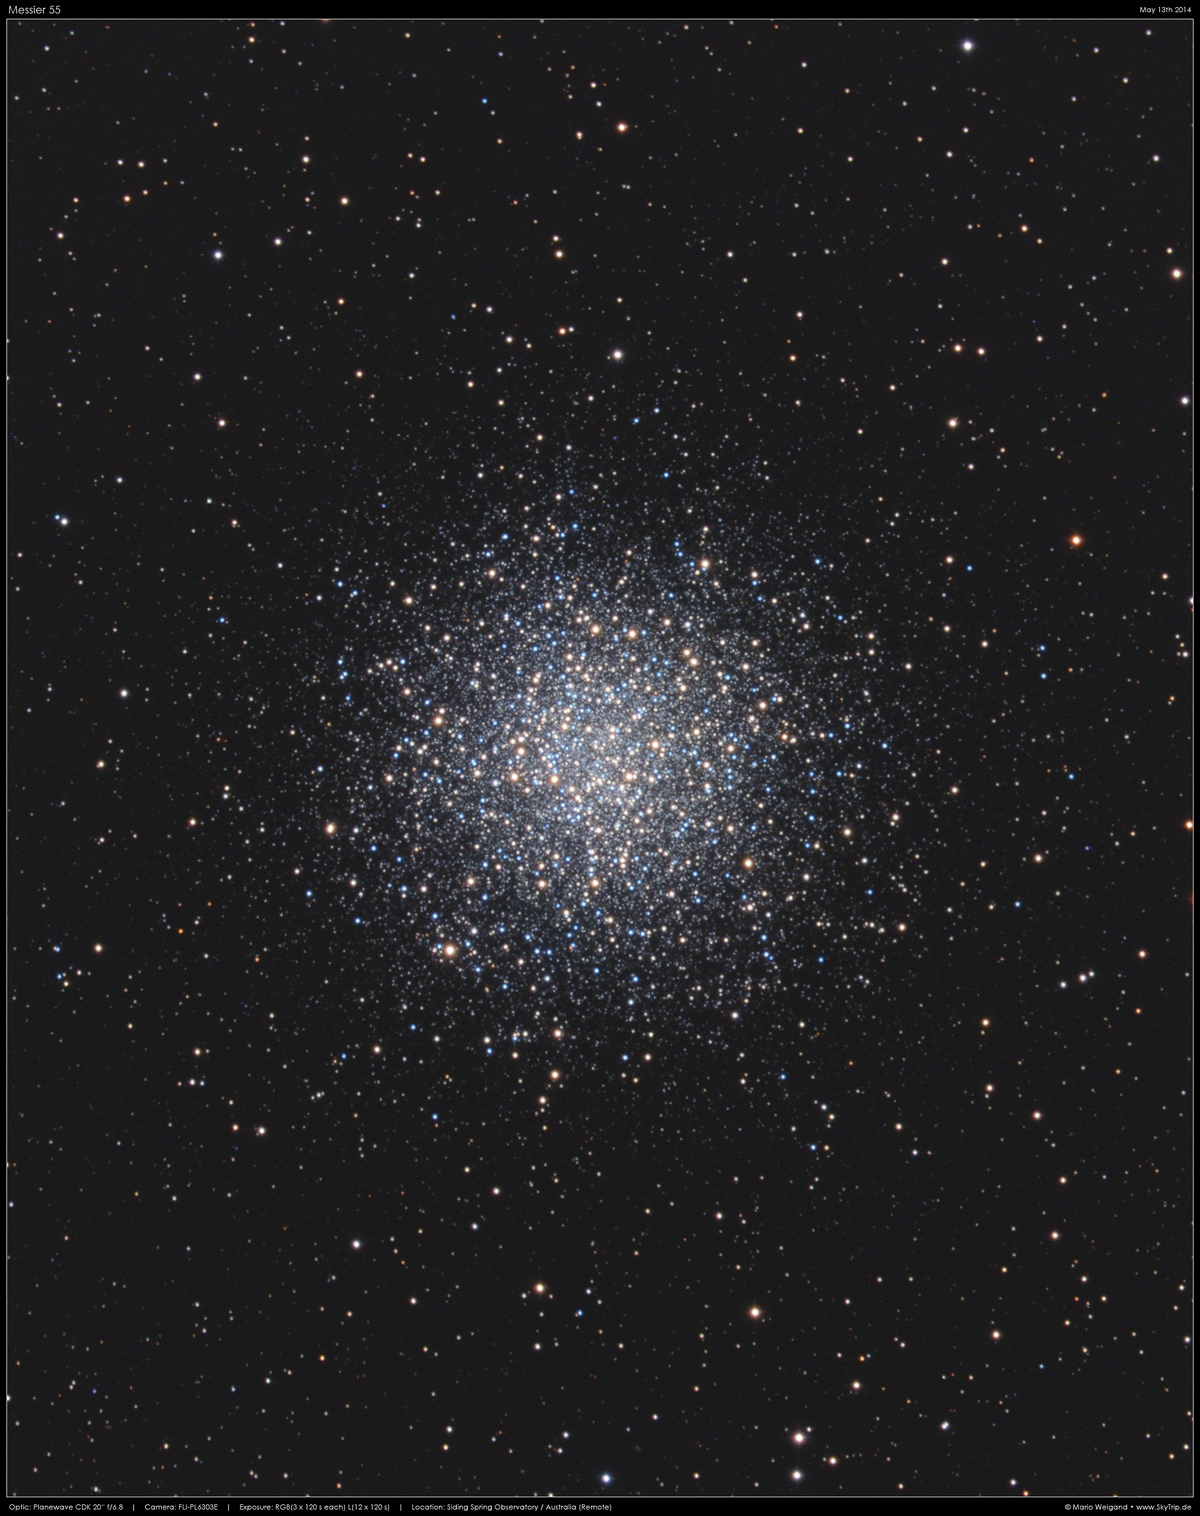 Kugelsternhaufen Messier 55